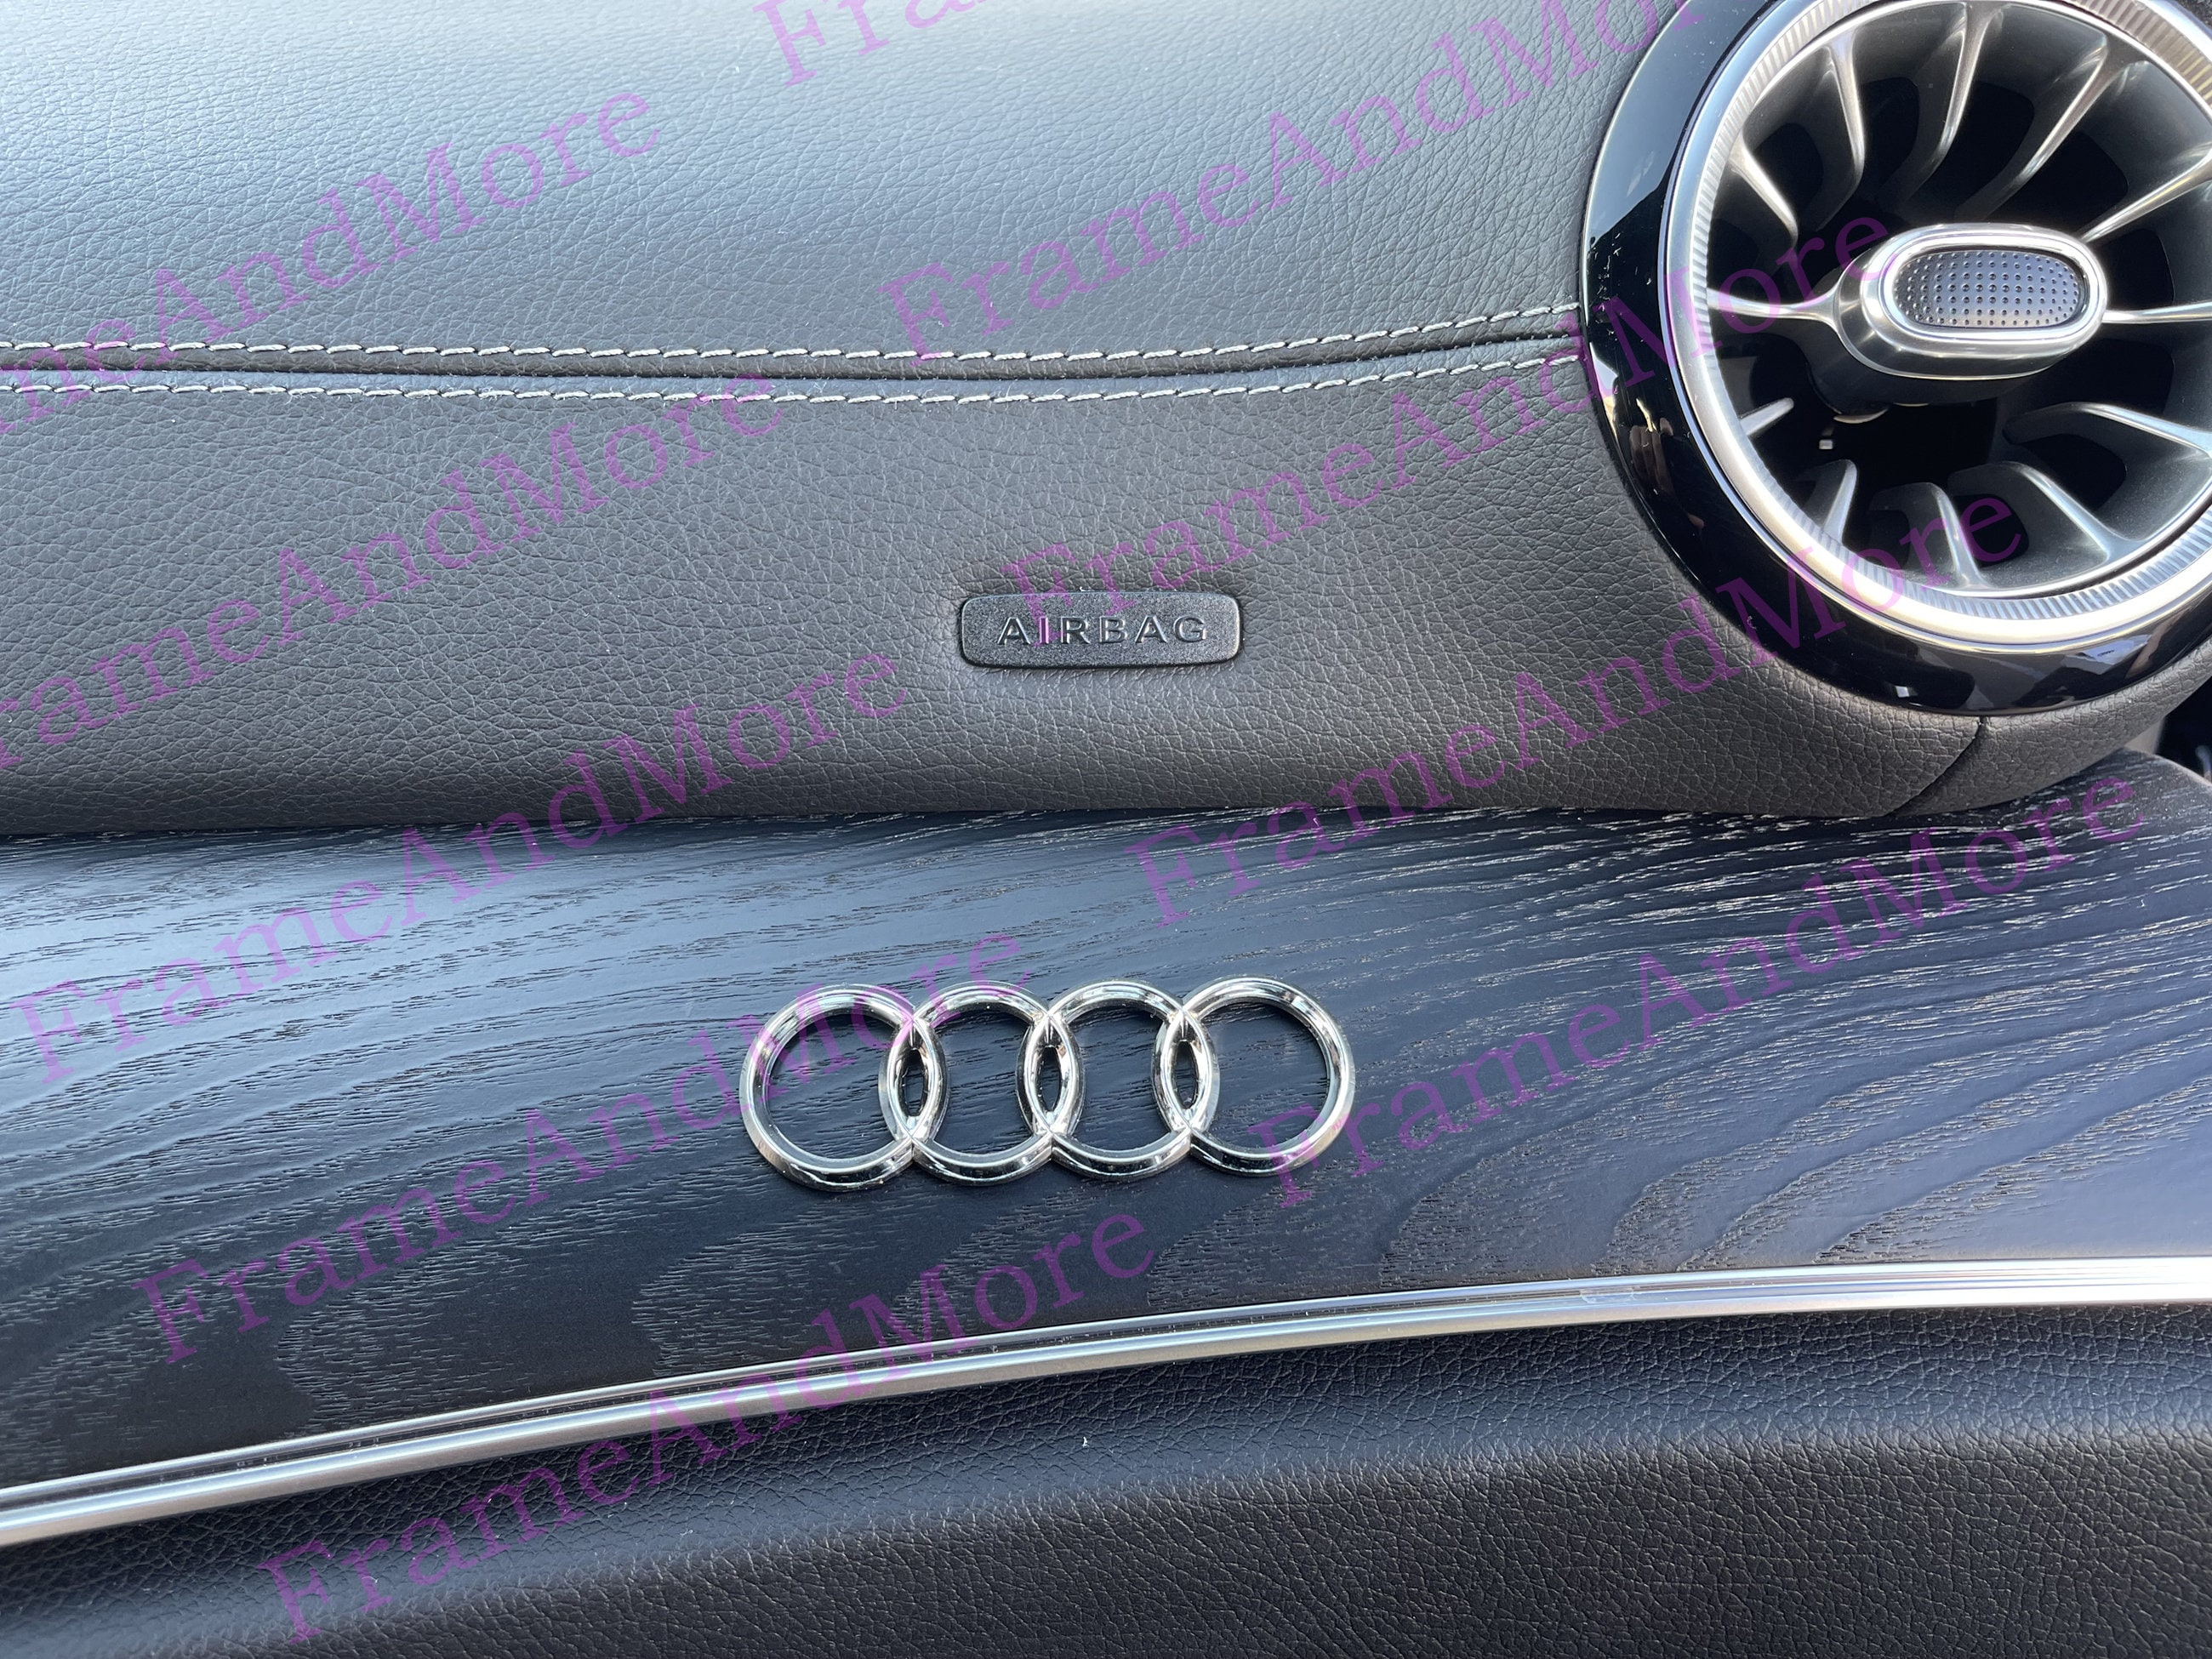  3D Badge Decal Sticker, Love Heart Logo Rear Trunk Emblem, Car  Replacement 3D Sticker, Car Exterior Emblems Badge 3D Sticker Decal Fit for  Audi A3 A4 A5 A6 A8 TT R8